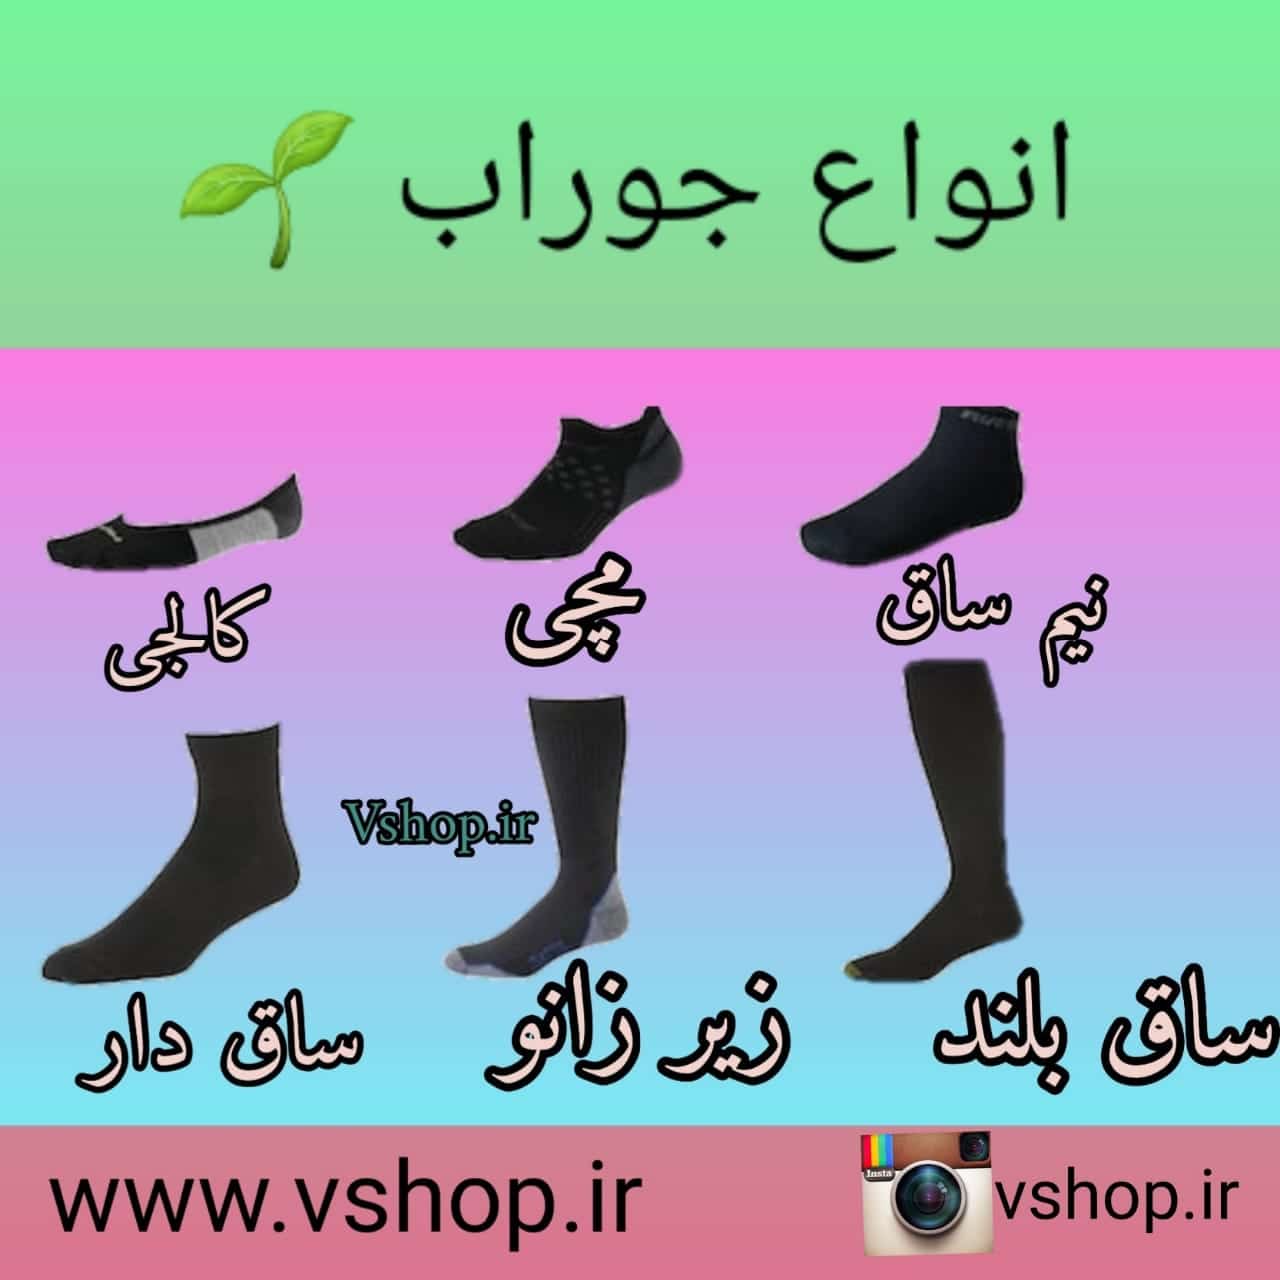 انواع مختلف جوراب و نحوه پوشیدن آنها